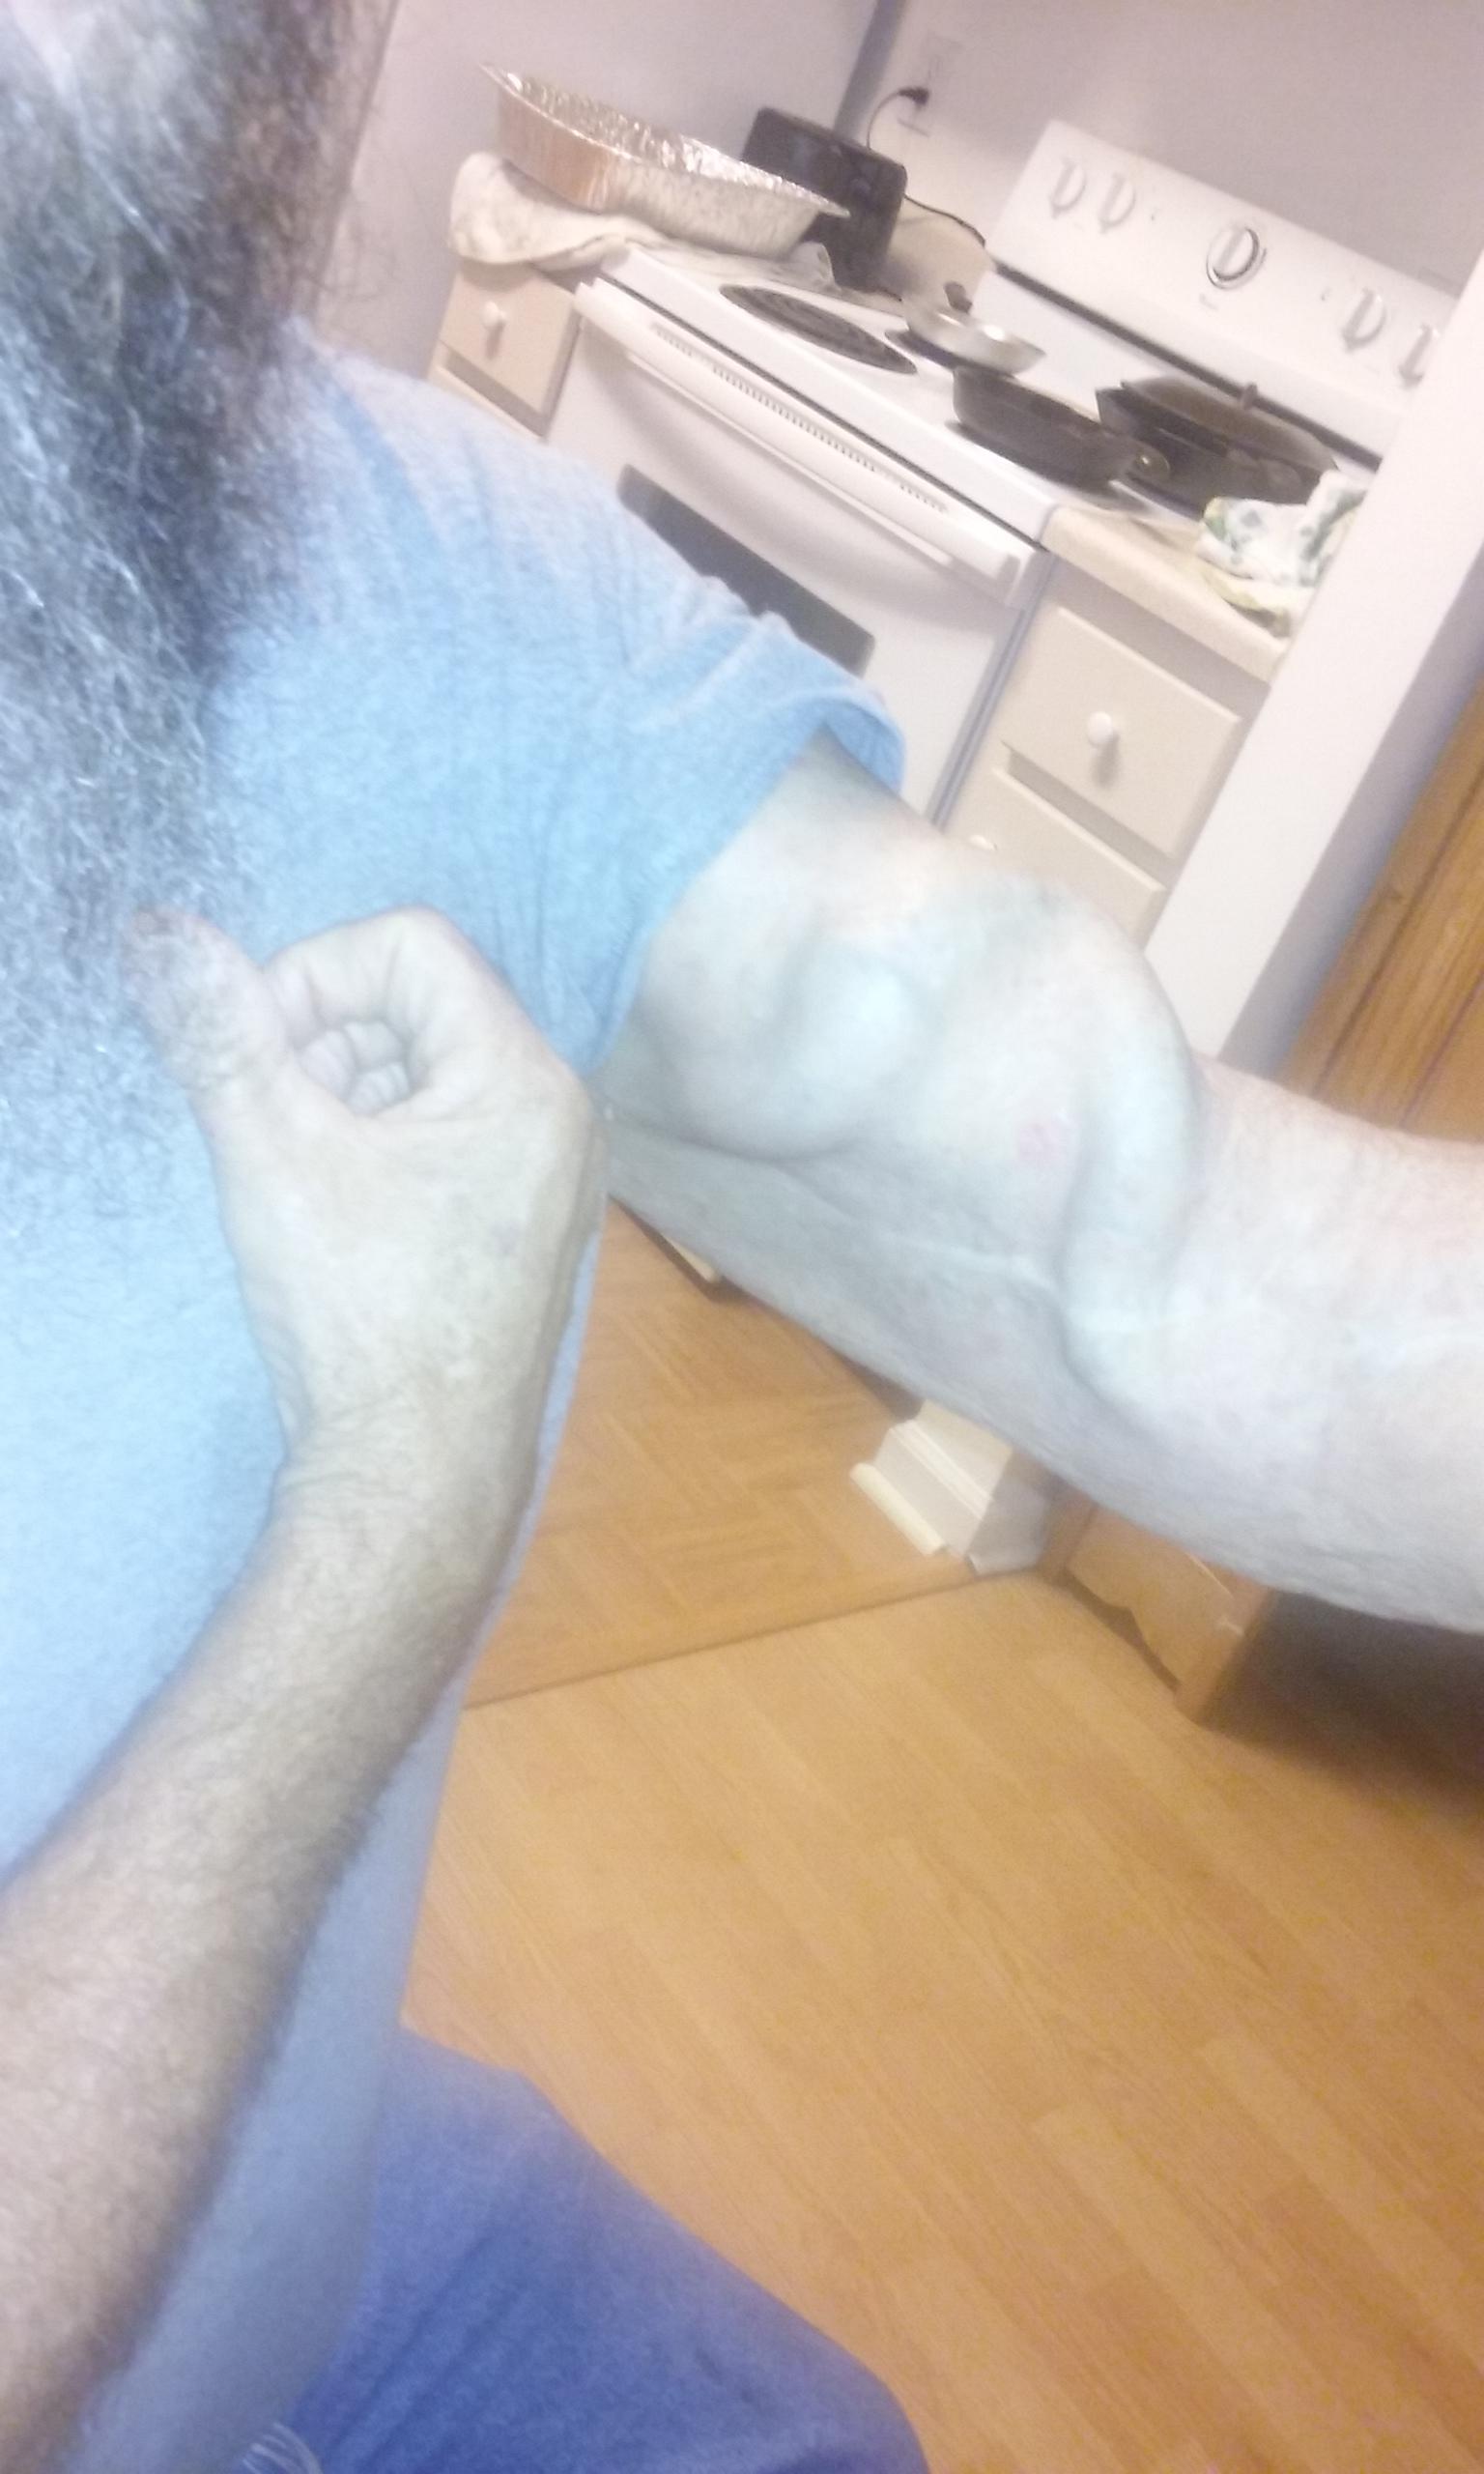 A vein in my girlfriend's dad's arm.